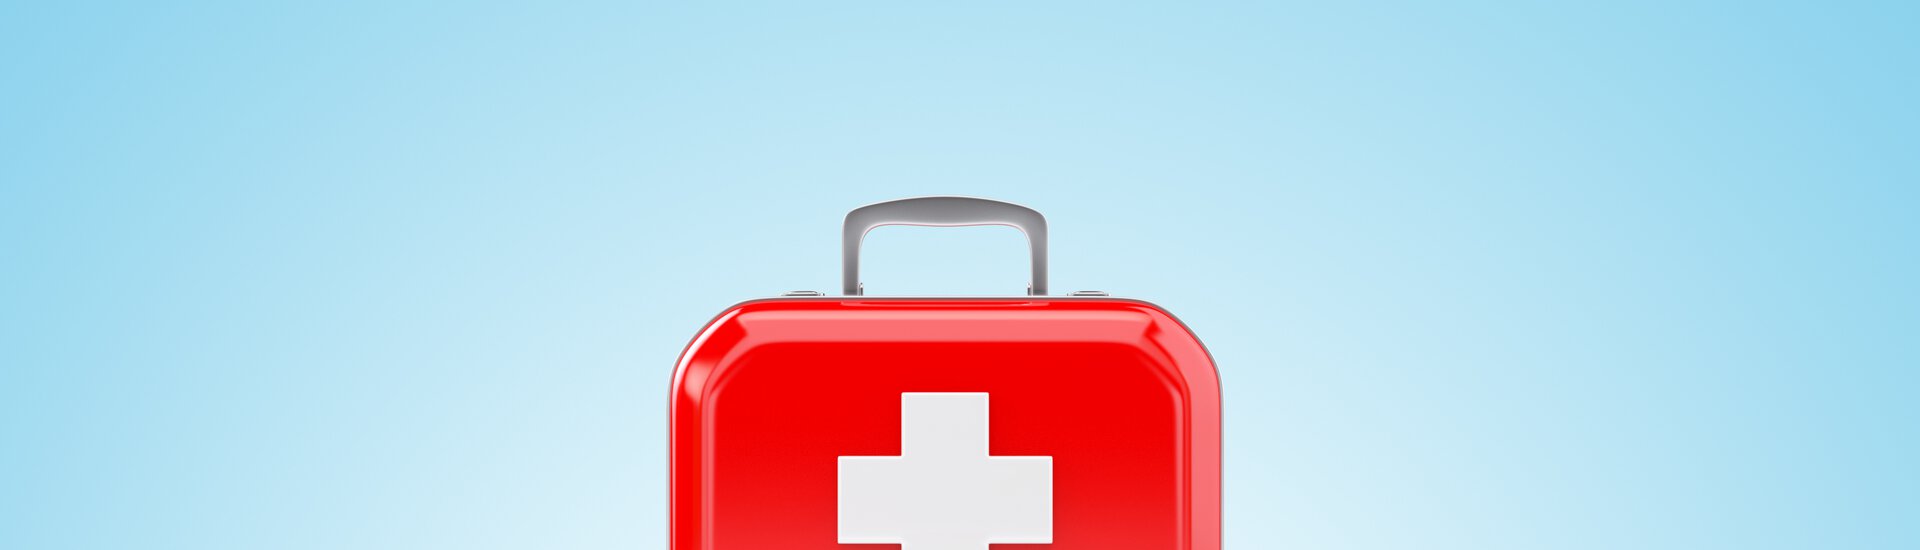 Roter Erste-Hilfe-Kasten vor blauem Hintergrund